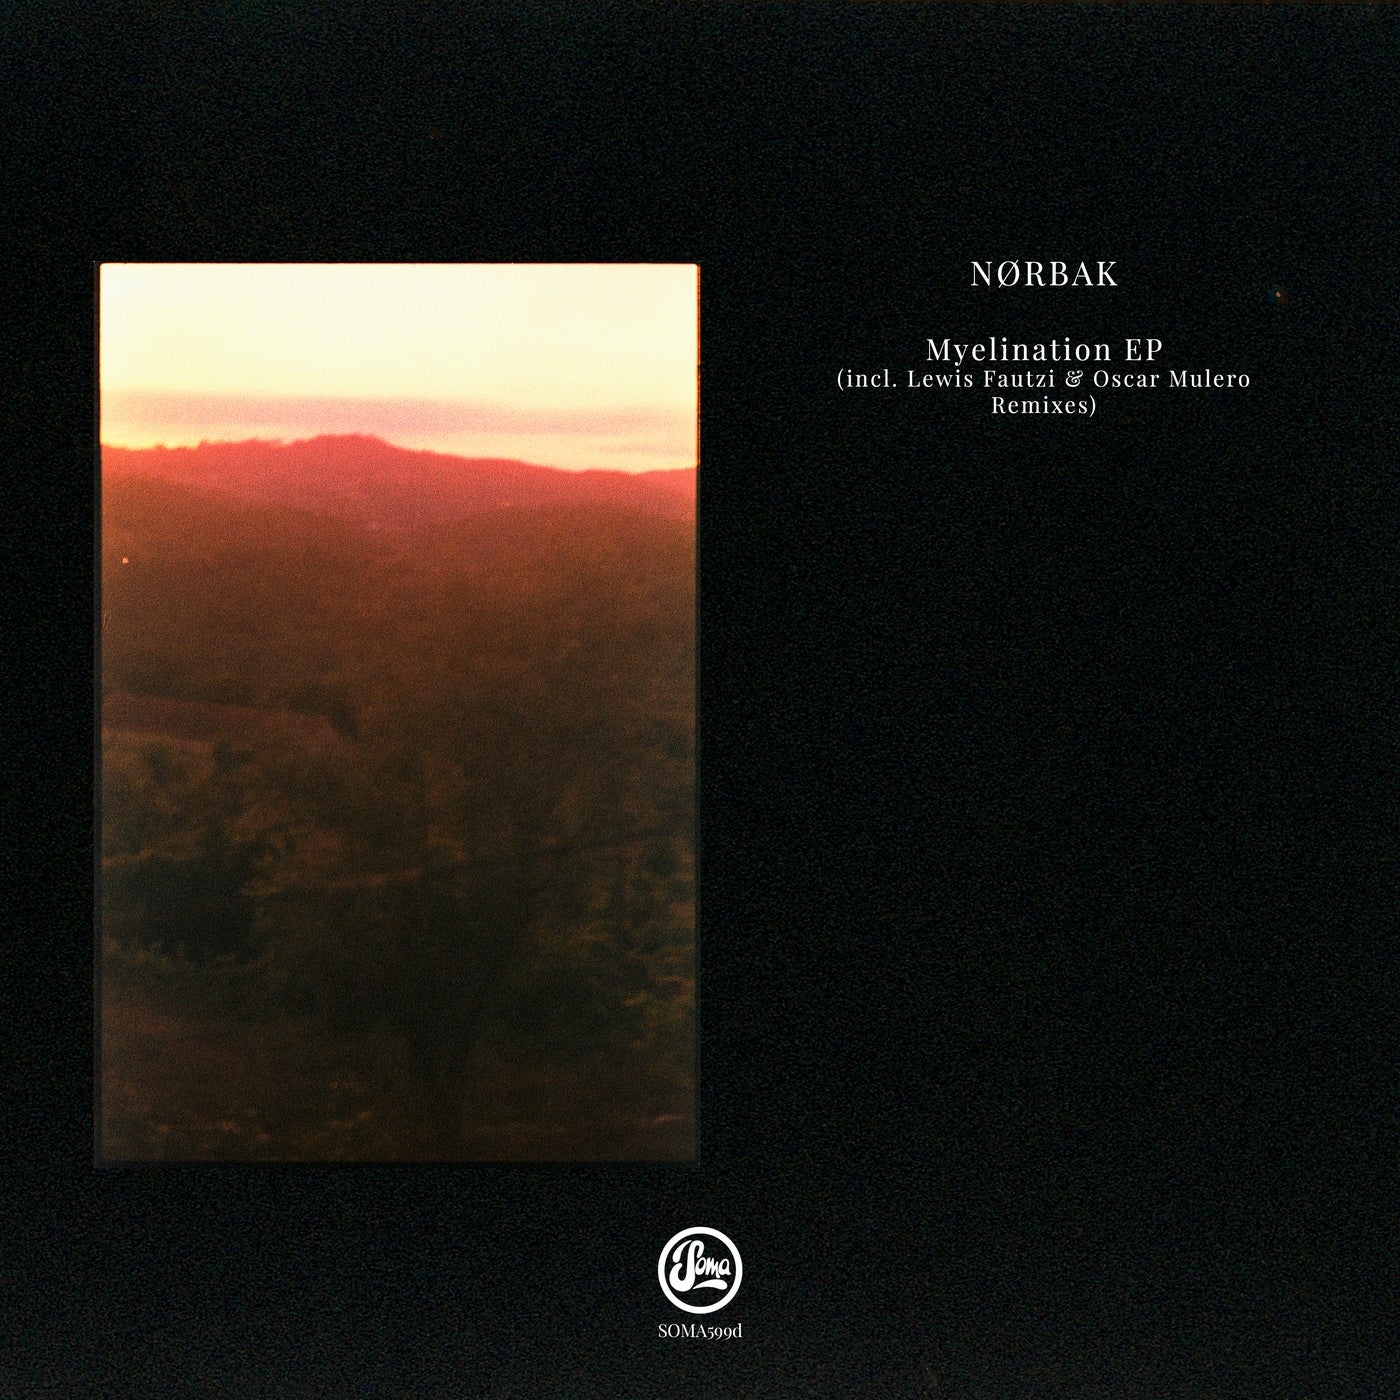 image cover: NØRBAK - Myelination EP (Inc Oscar Mulero & Lewis Fautzi Remixes) / SOMA599D